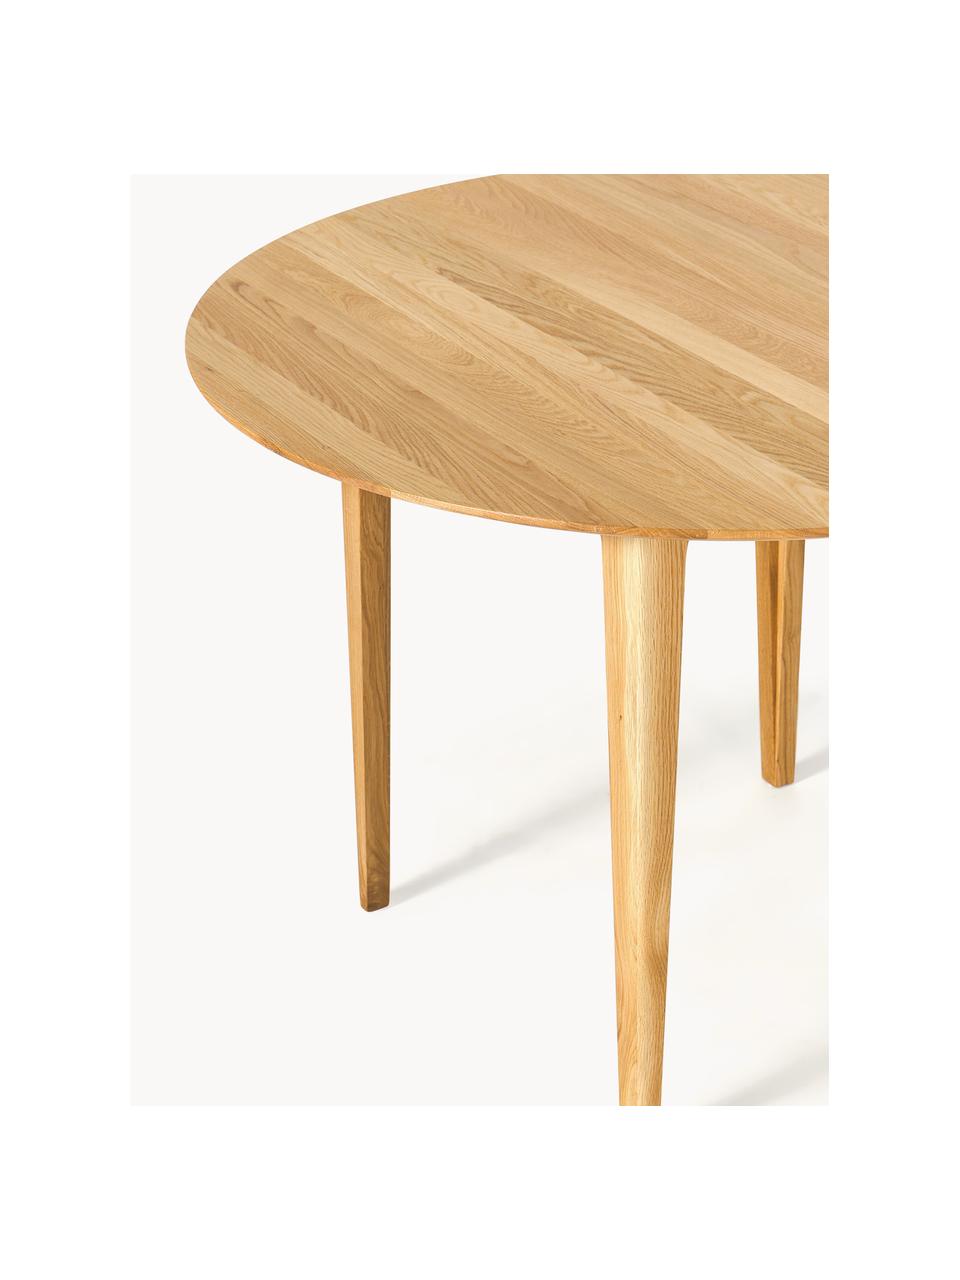 Stół do jadalni z drewna dębowego Archie, Lite drewno dębowe olejowane

Ten produkt jest wykonany z drewna pochodzącego ze zrównoważonych upraw, które posiada certyfikat FSC®., Drewno dębowe, Ø 110 cm